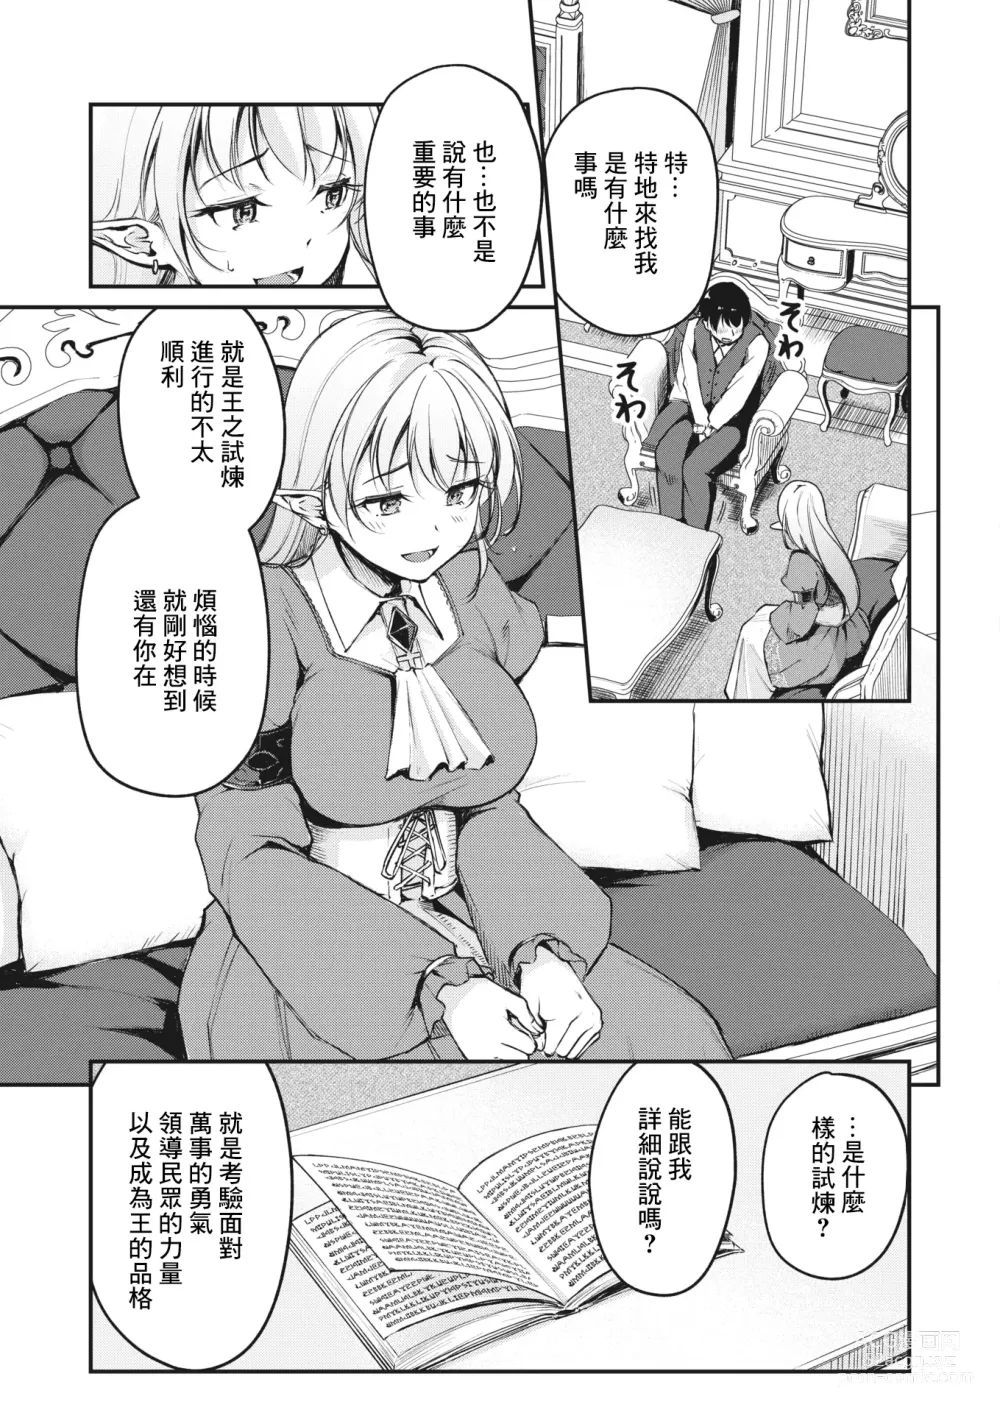 Page 7 of manga Hakoiri Elf no Oujo-sama